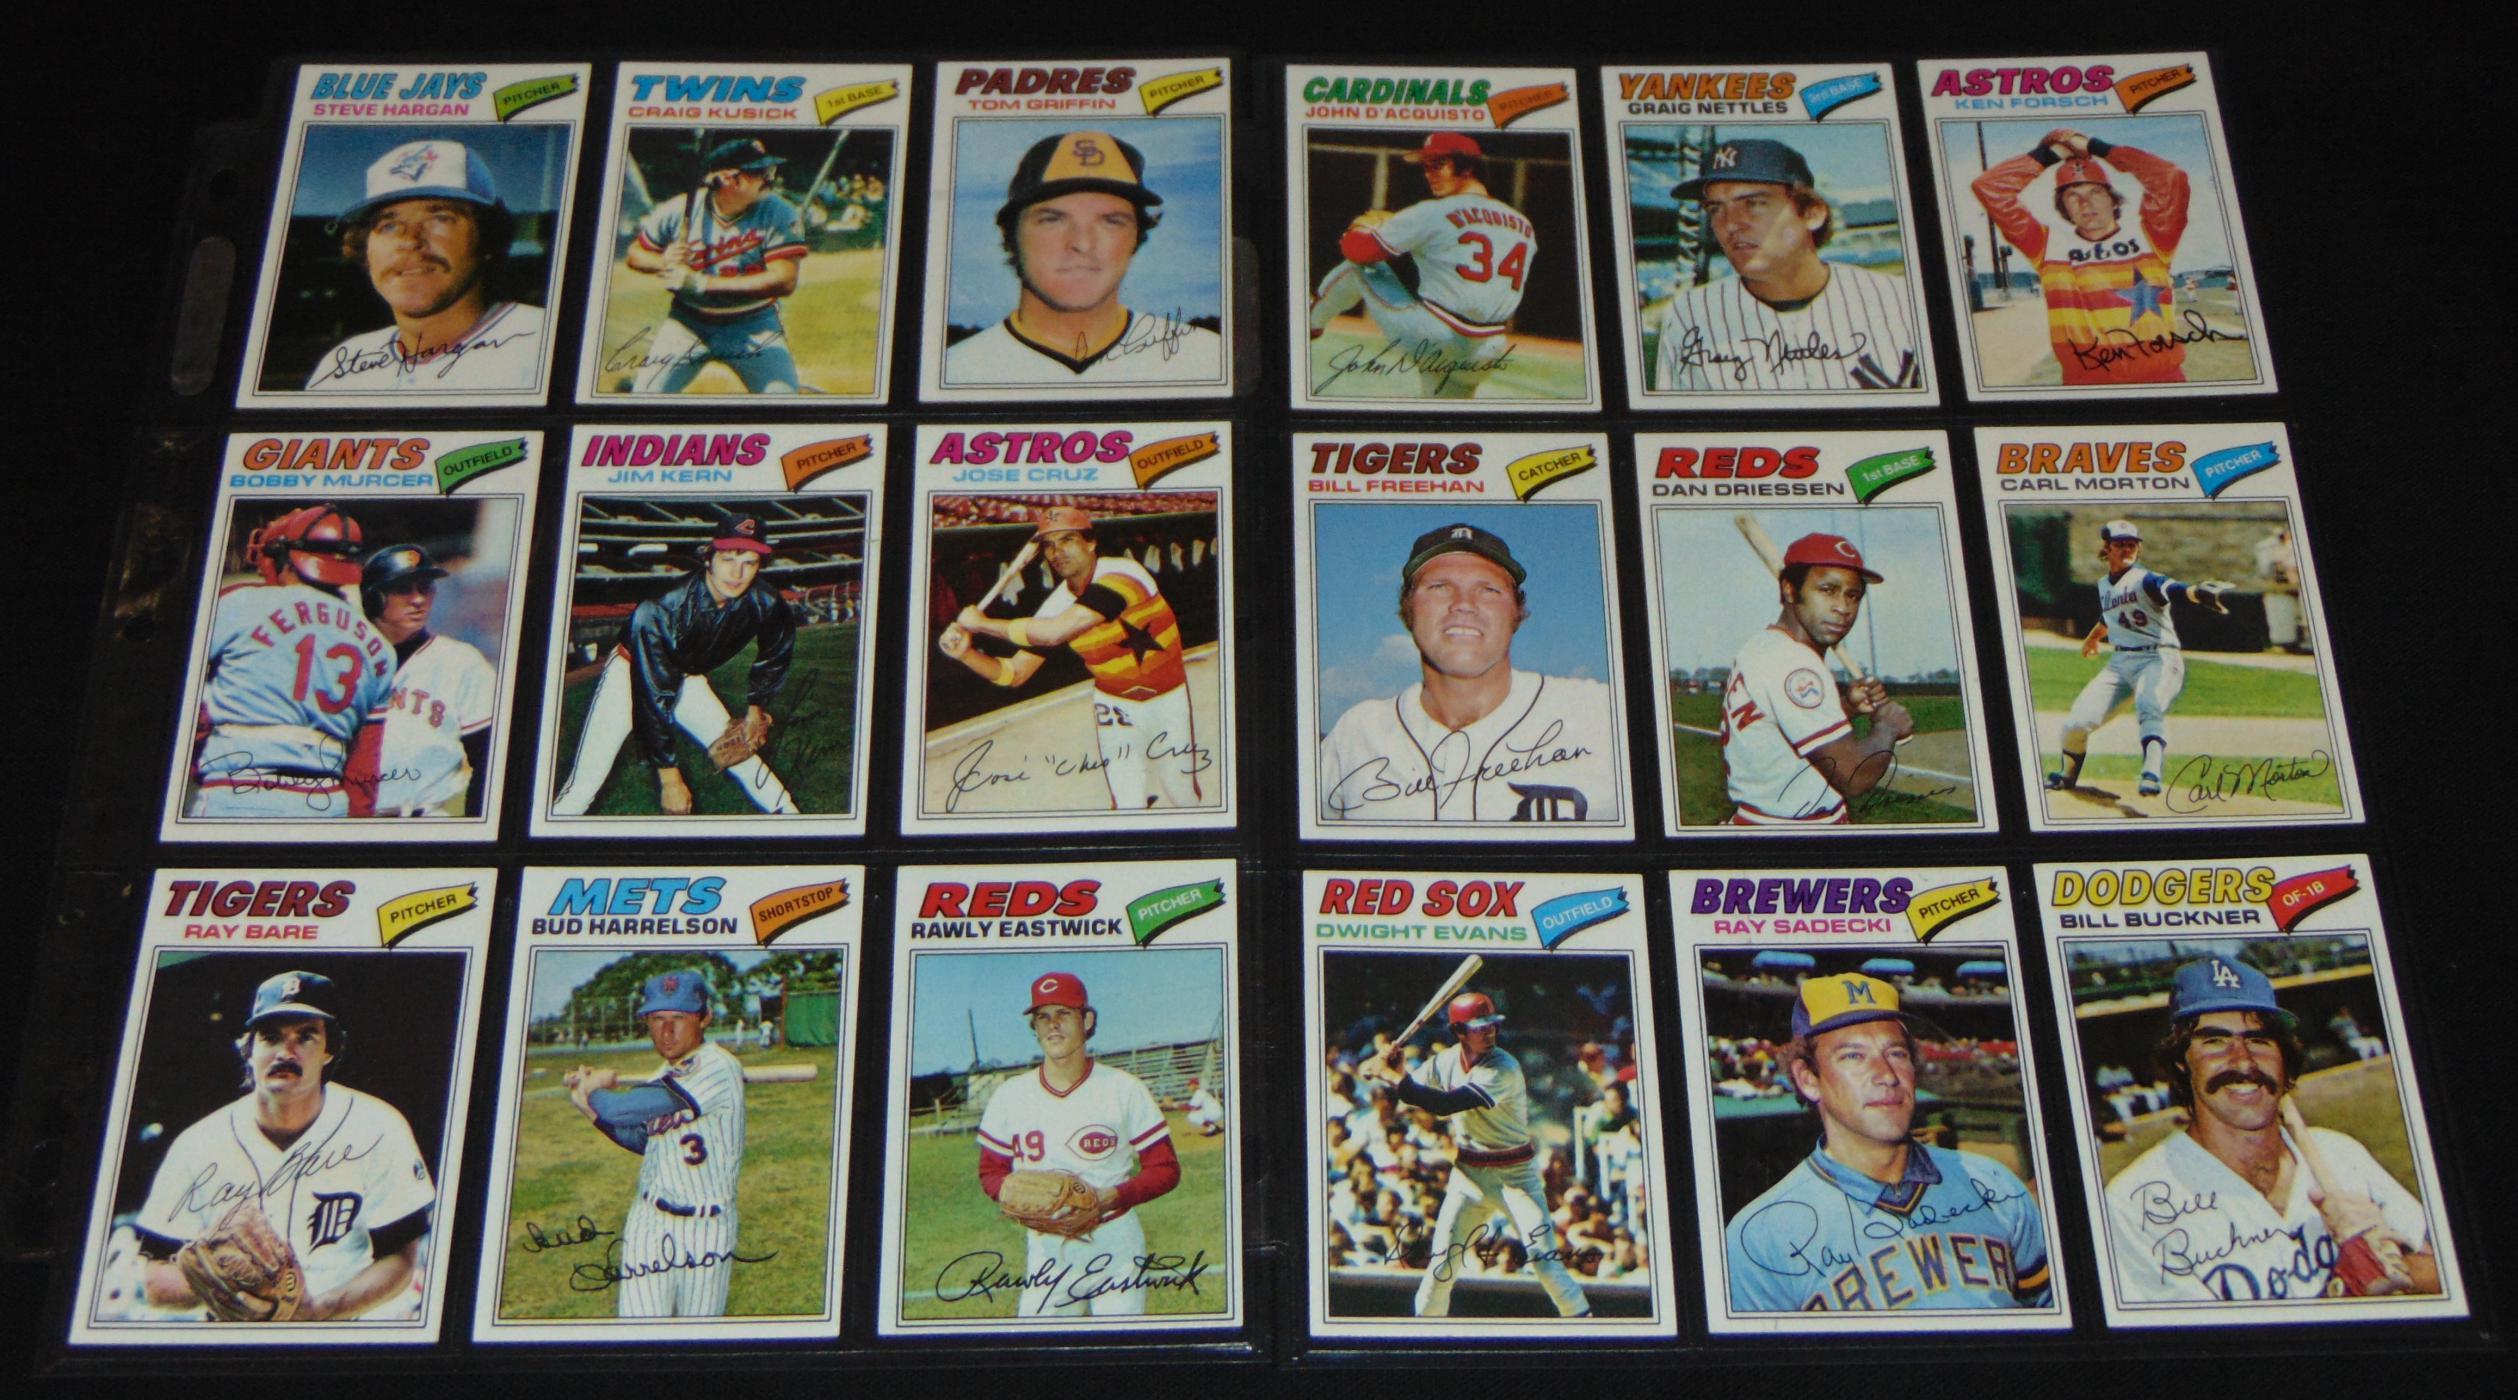 1977 Topps Baseball Card Set.